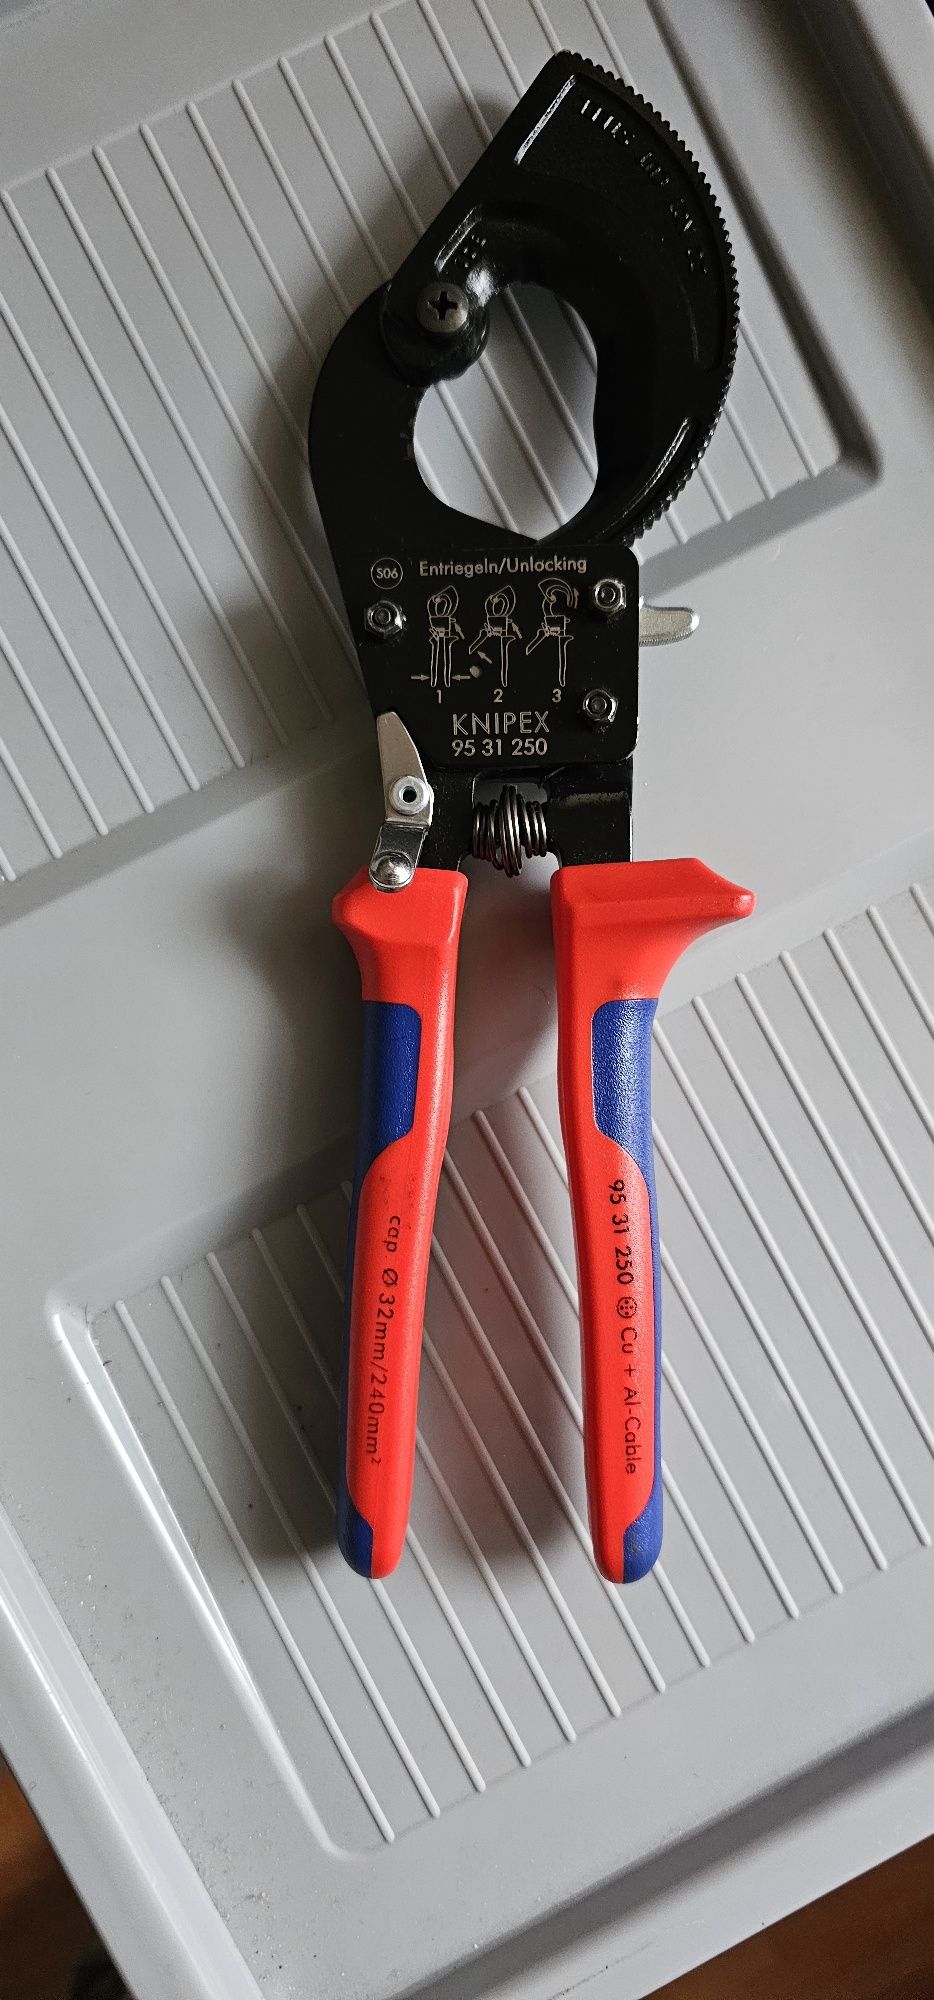 KNIPEX Nożyce do kabli (mechanizm zapadkowy)
Nożyce do kabli